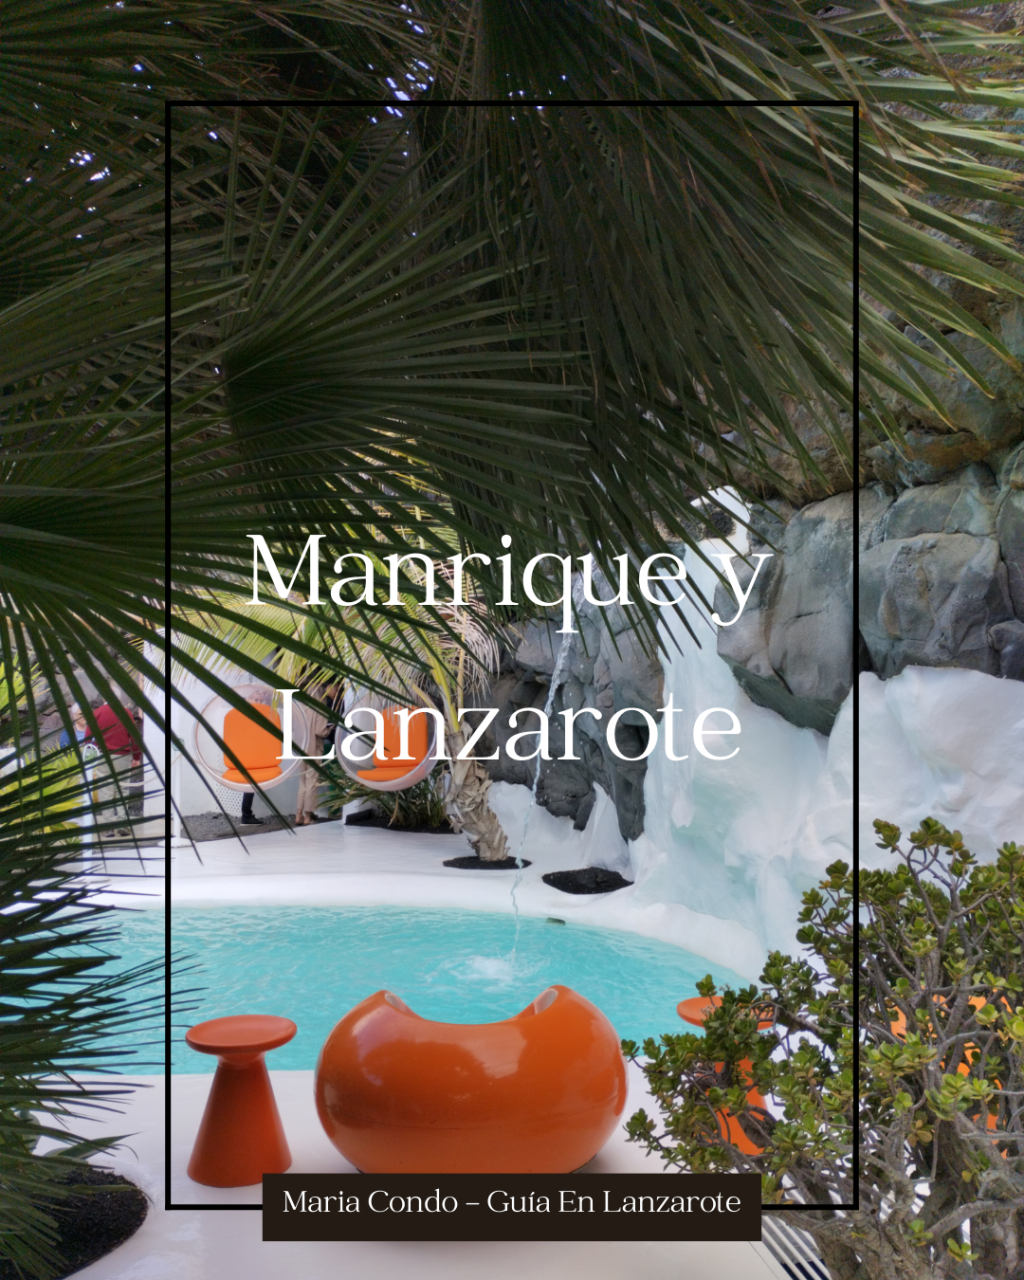 Cesar Manrique y su legado para la isla de Lanzarote. En busca de un turismo más sostenible